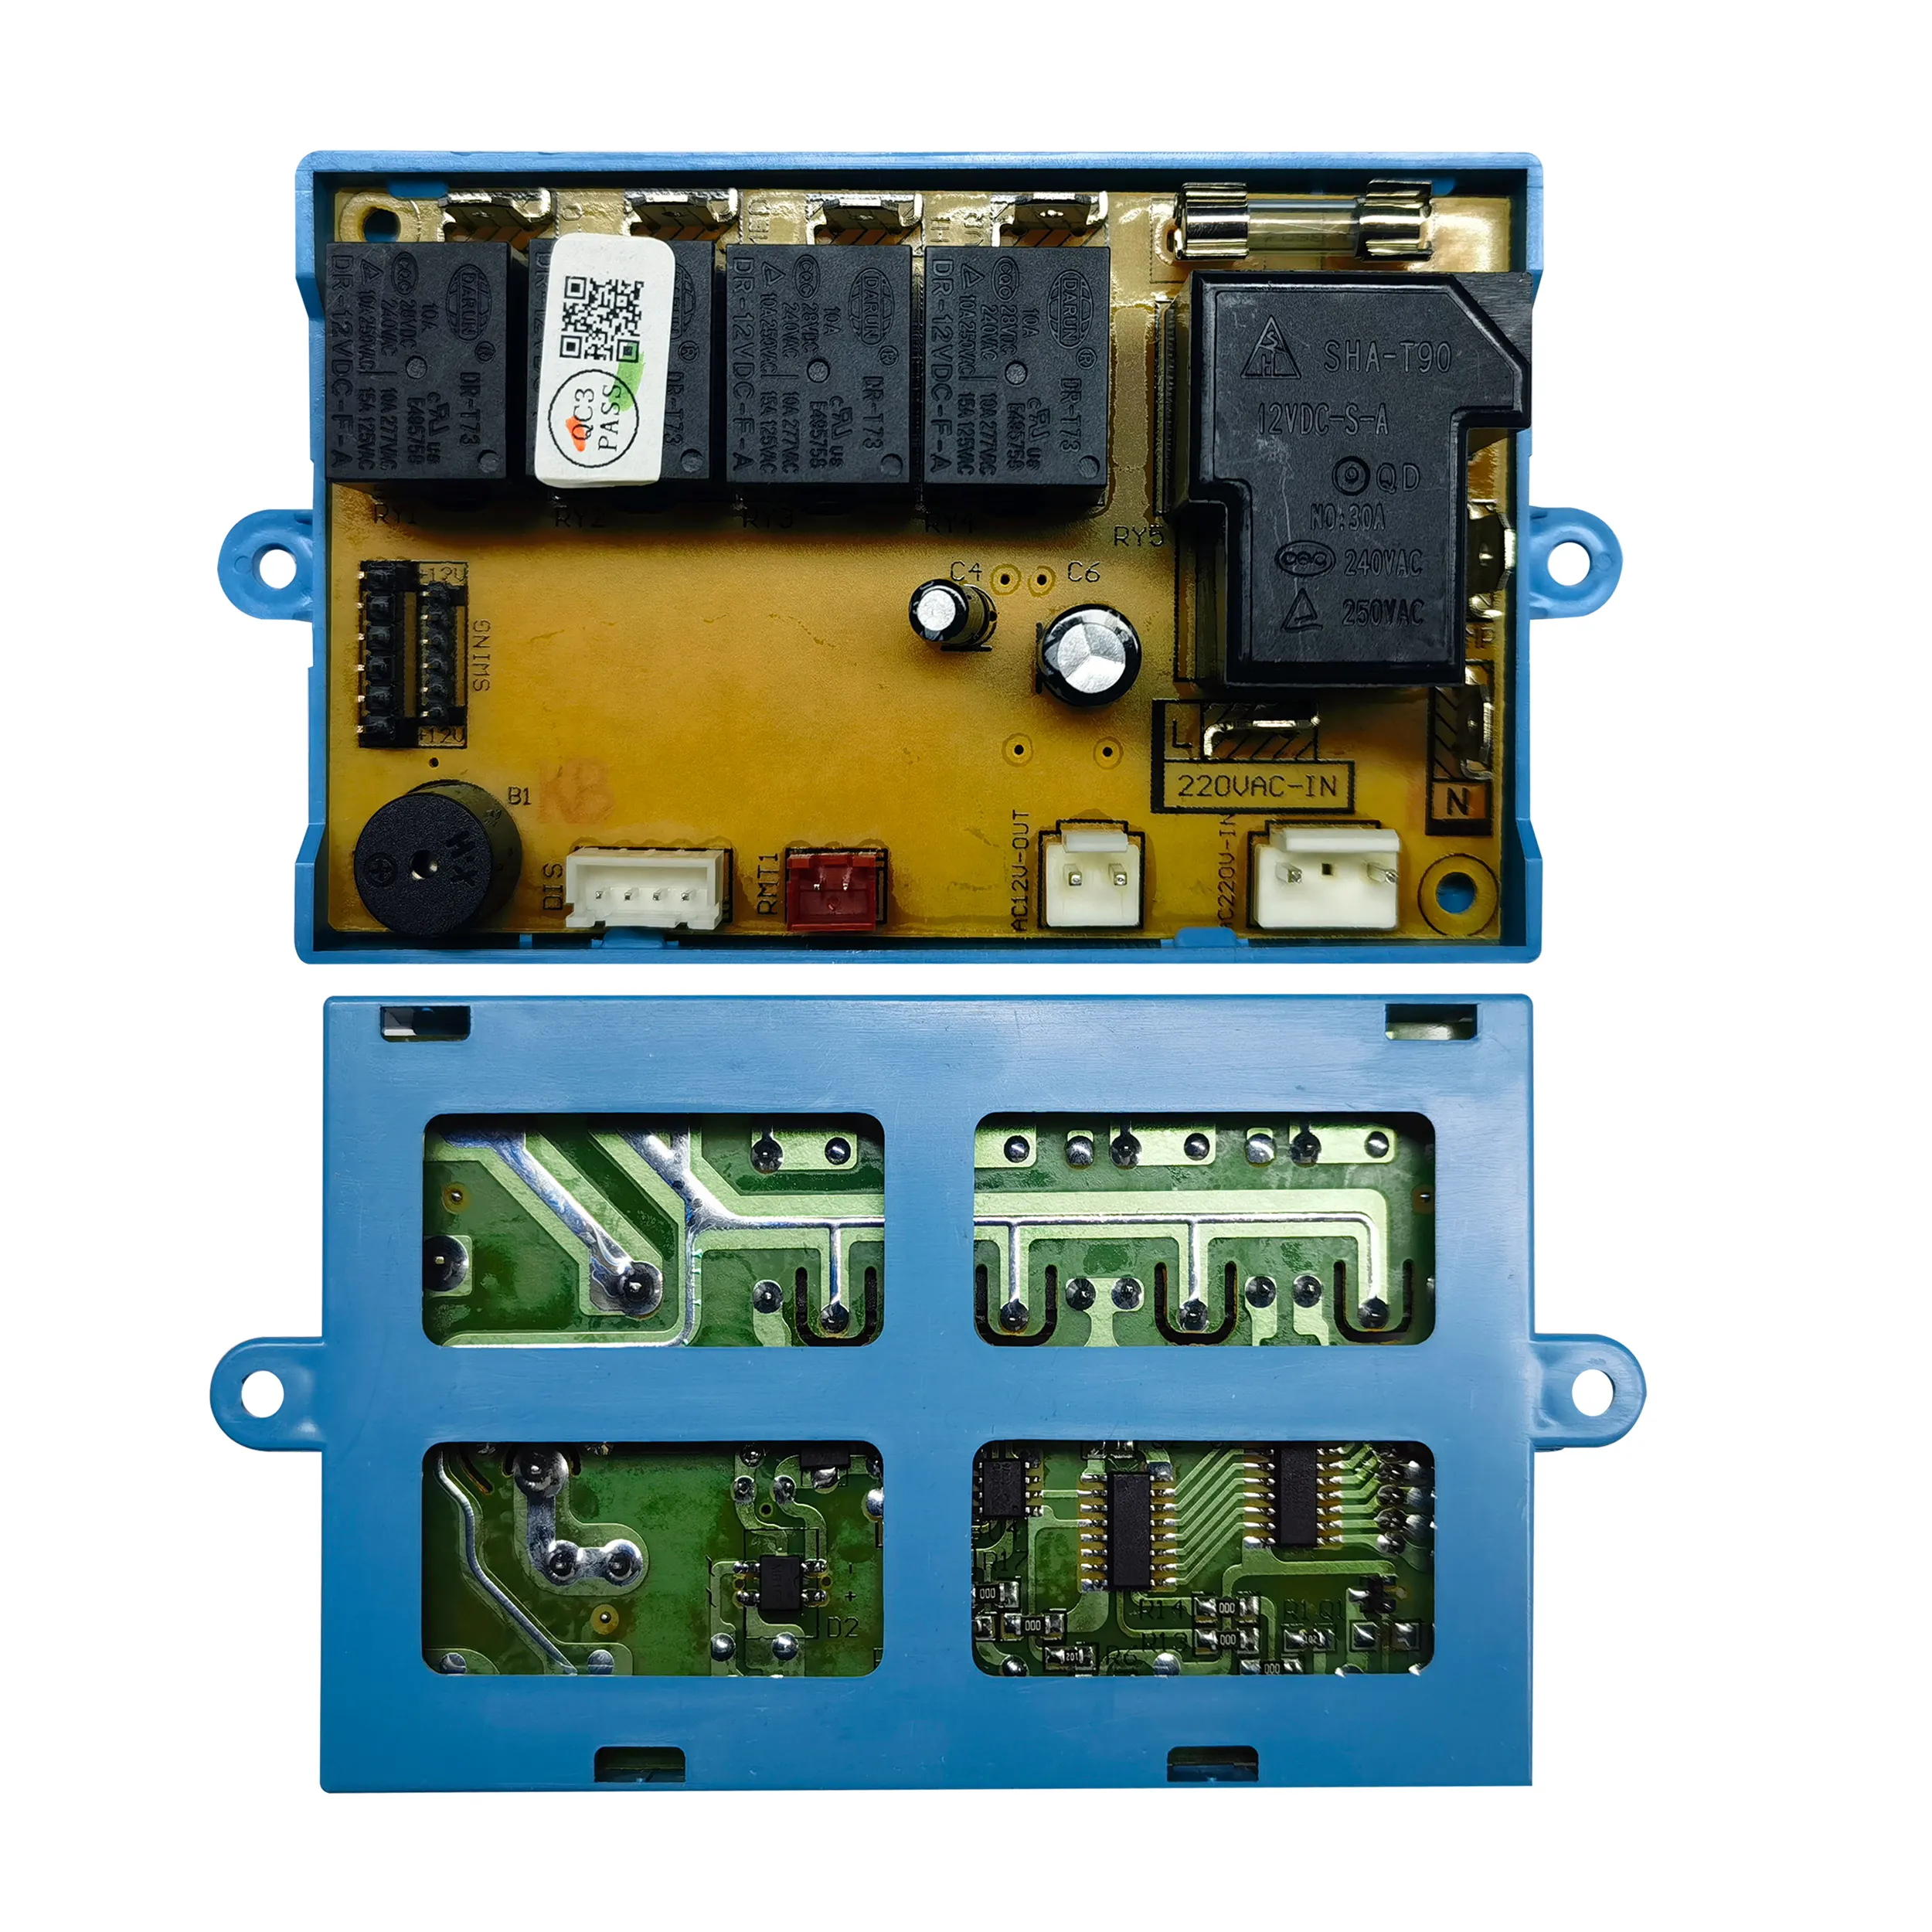 مكيف هواء QUNDA QD U02B + (M) شامل نظام التحكم في مكيف هواء سبليت قطعة غيار لوح كمبيوتر شامل